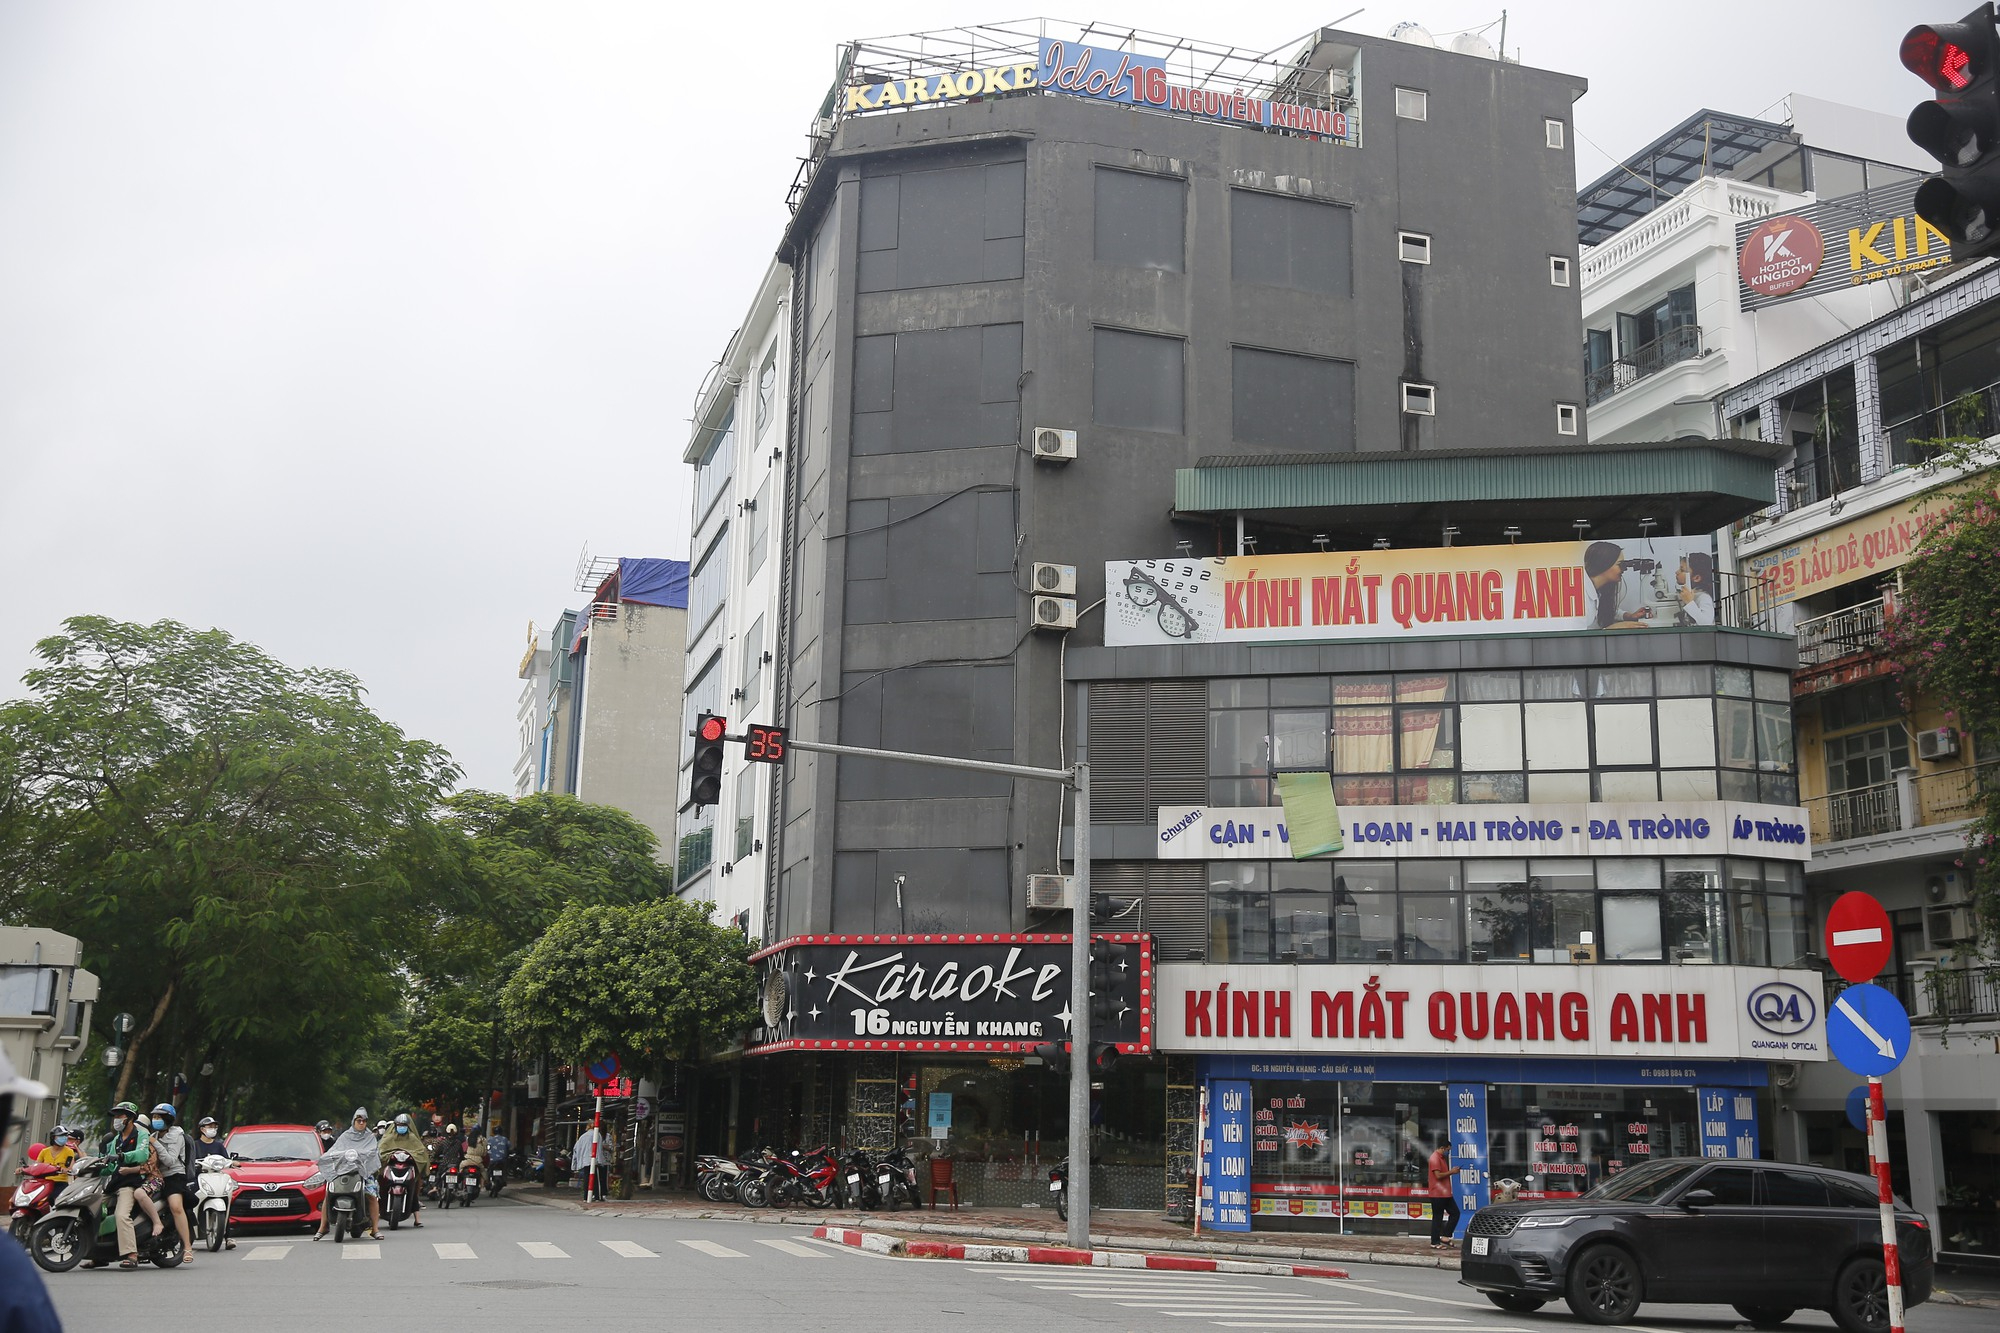 Karaoke vi phạm phòng cháy ở Hà Nội bị rào chắn, dán thông báo để ngăn hoạt động chui - Ảnh 8.